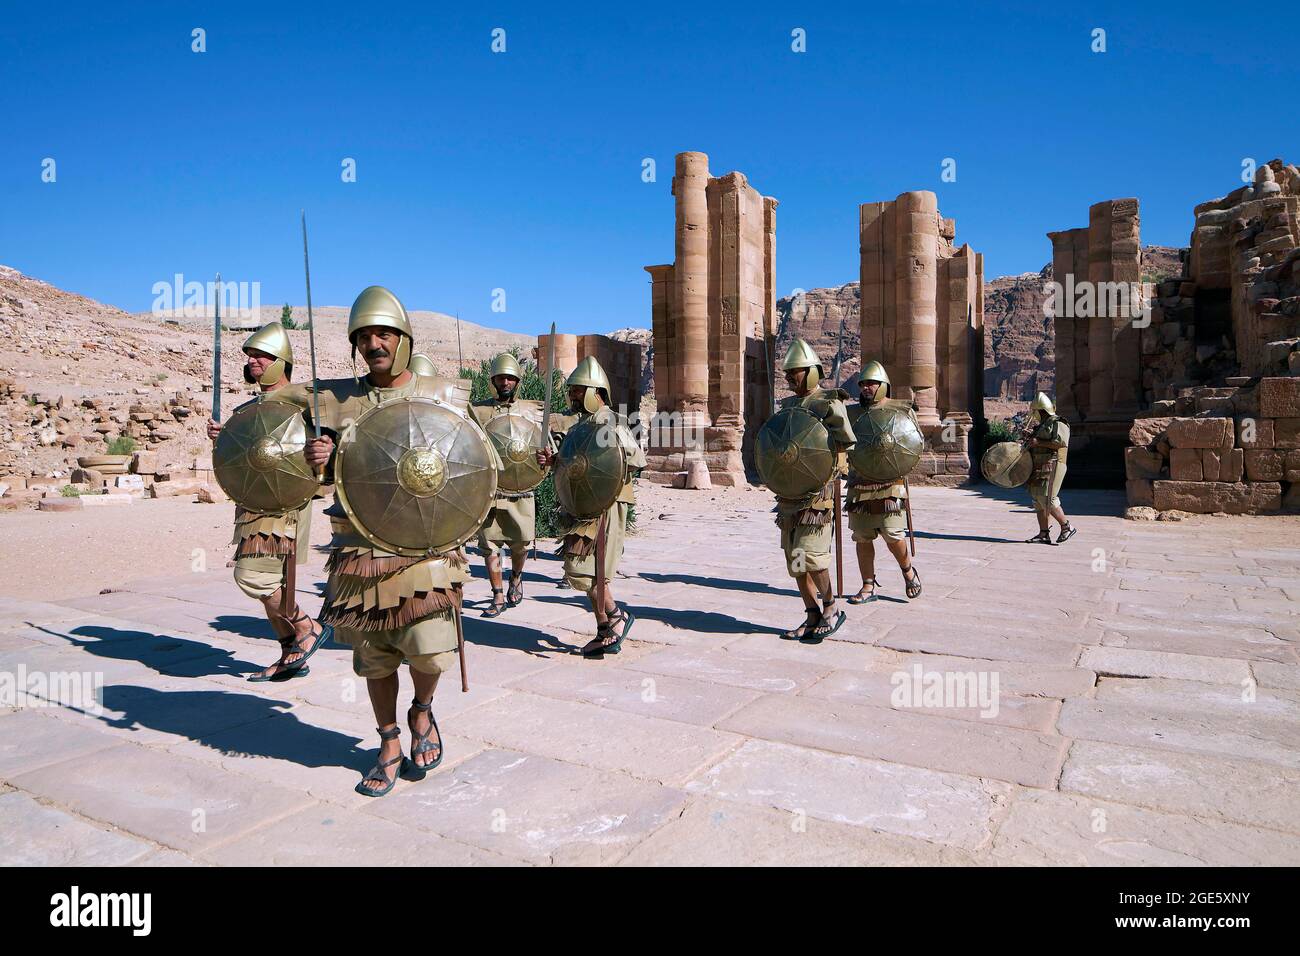 Changement de la garde, refait avec des acteurs comme soldats nabatéens, porte à thème vers le precinctPetra sacré, ancienne capitale des Nabatéens Banque D'Images